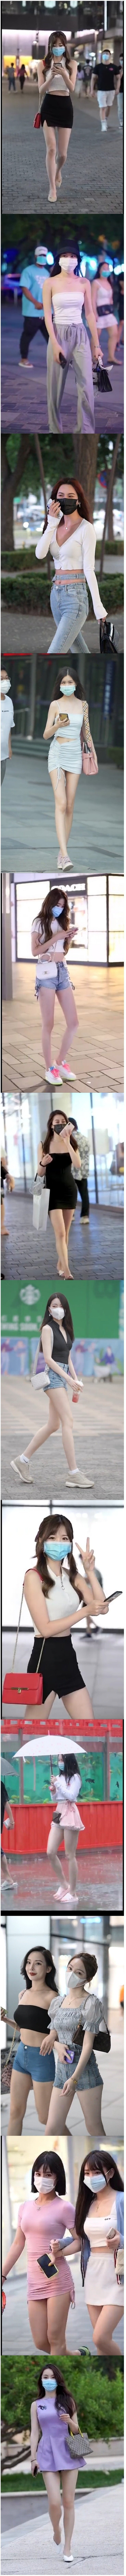 중국 대도시 여성 패션.jpeg